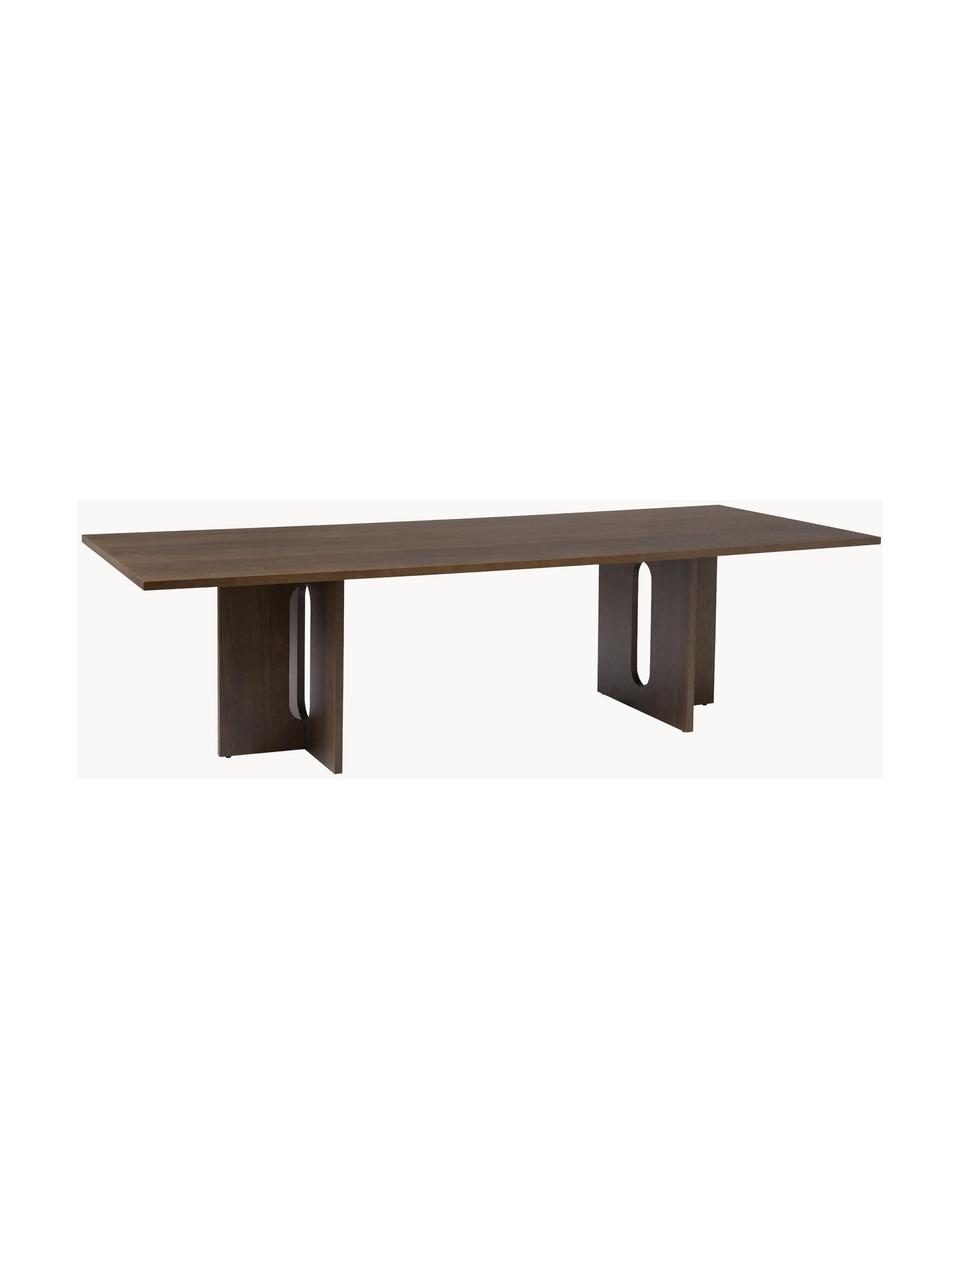 Jídelní stůl Androgyne, různé velikosti, Dřevovláknitá deska střední hustoty (MDF) s dubovou dýhou, Dřevo, mořené na tmavo, Š 280 cm, H 110 cm